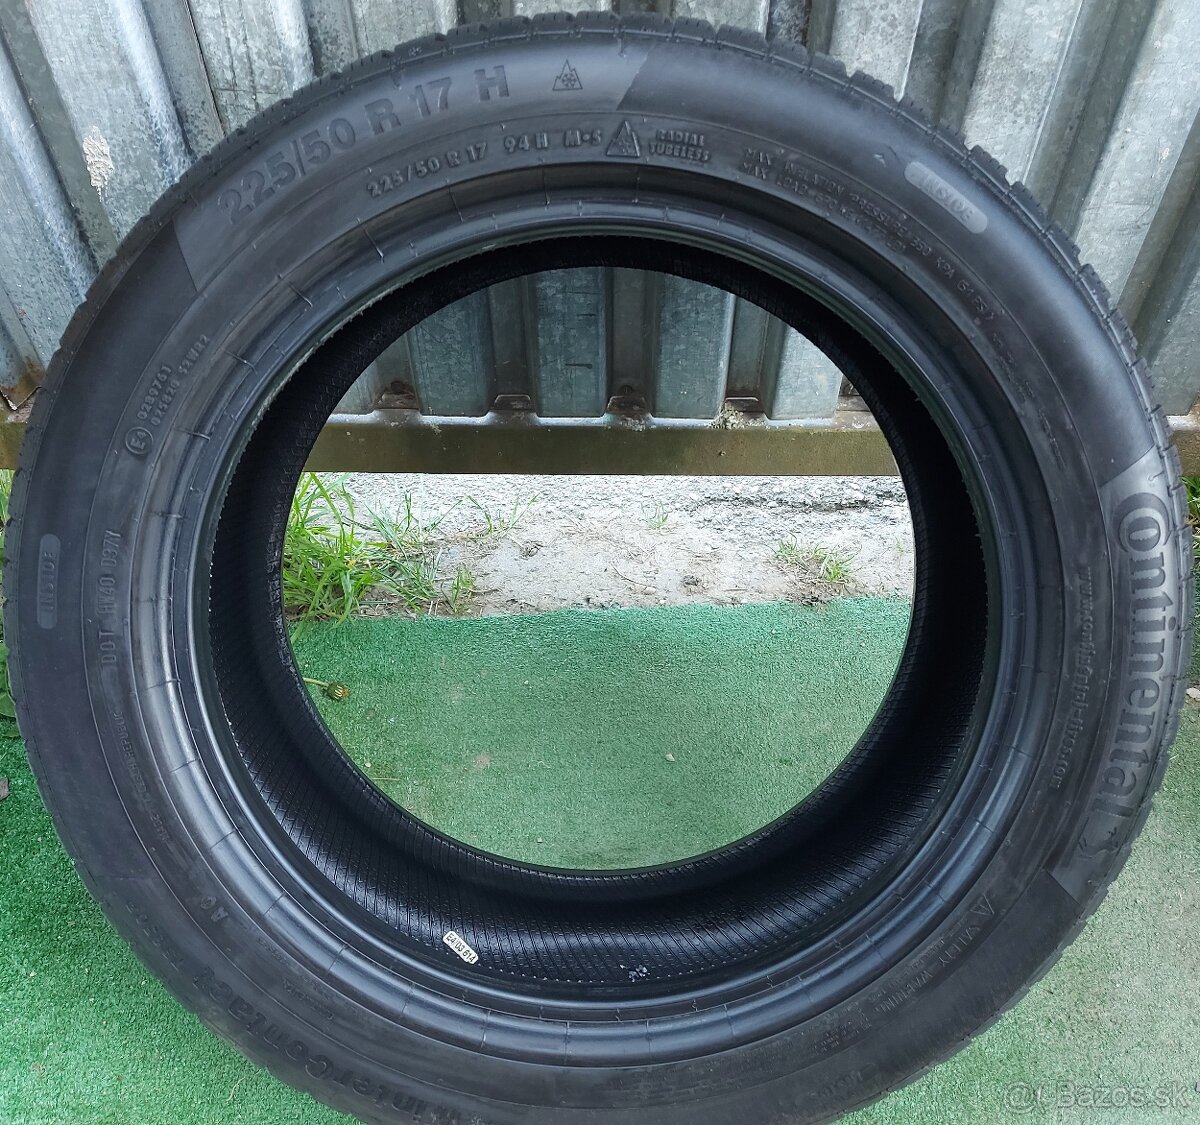 Špičkové zimné pneu Continental Wintercontact - 225/50 R17